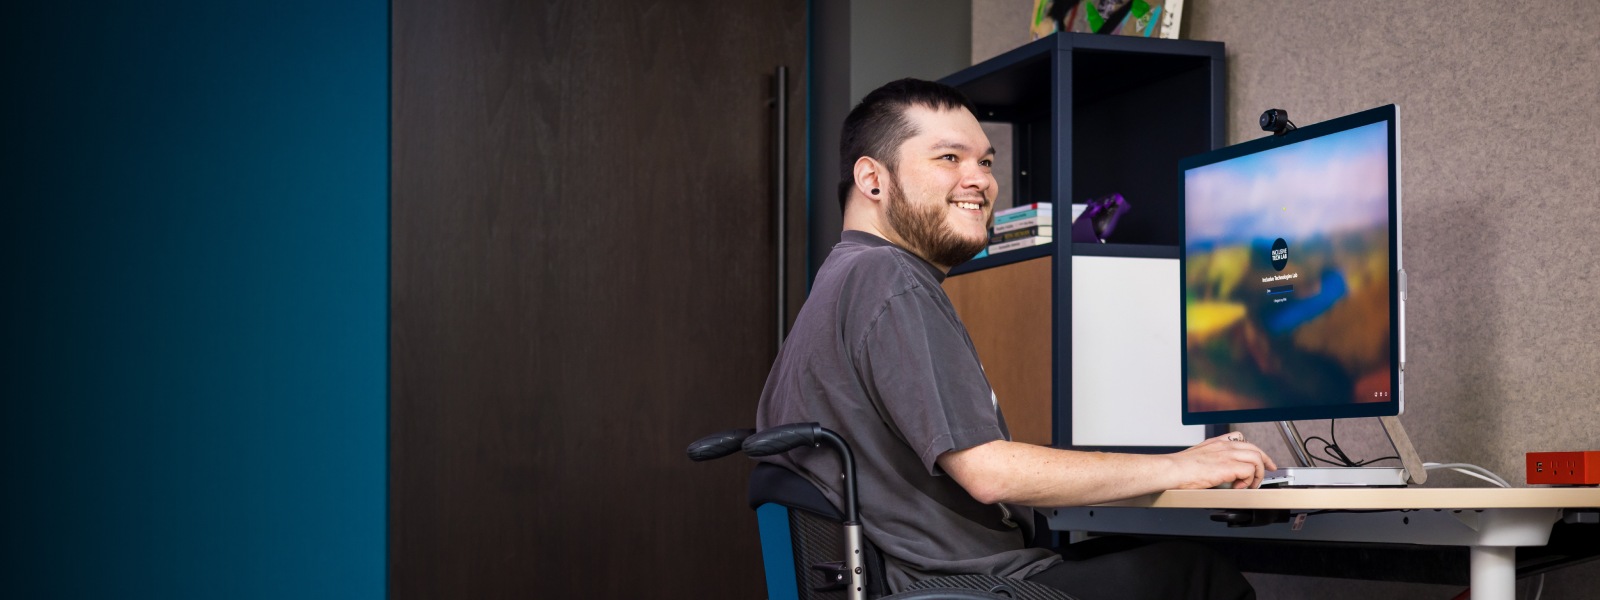 Une personne souriante en fauteuil roulant travaillant avec son PC de bureau.